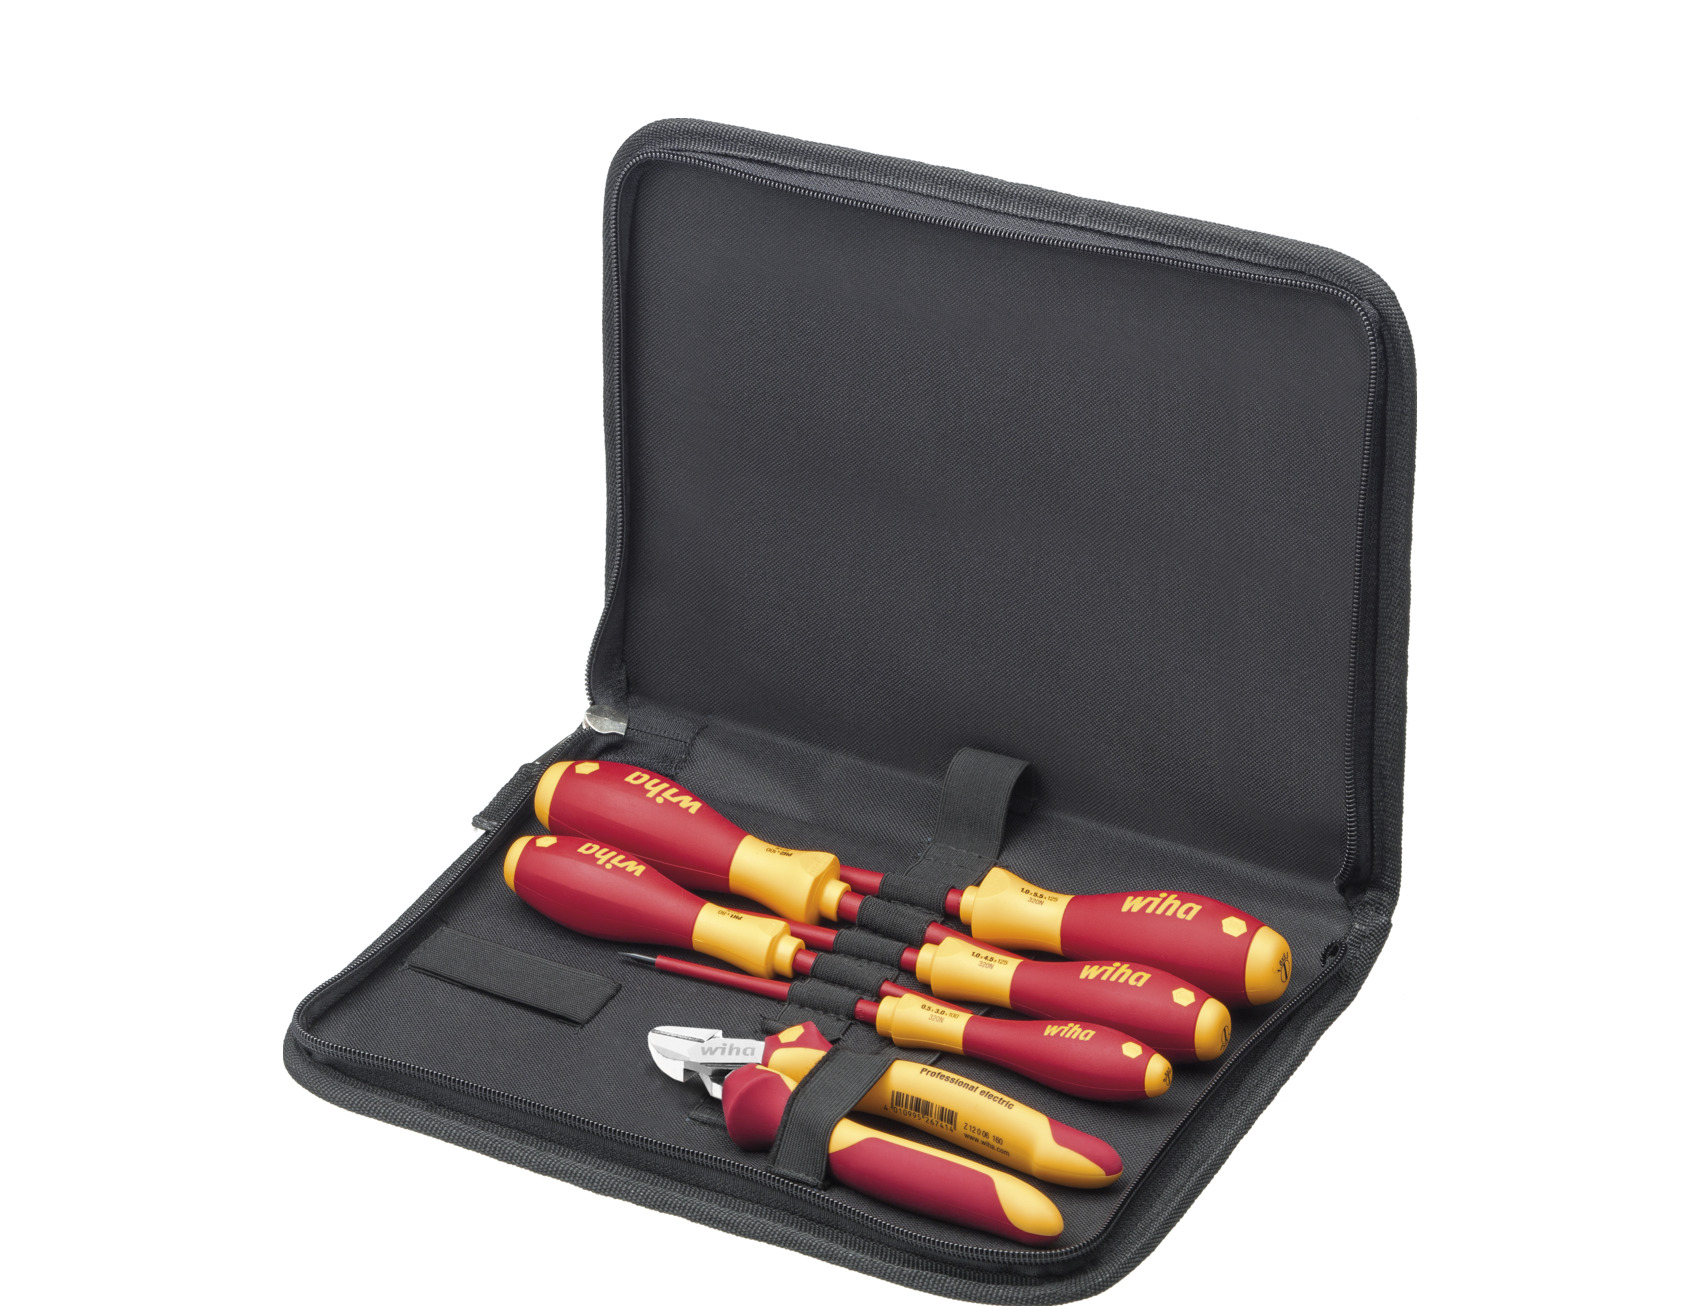 Kit de herramientas Wiha Tools, Bolsa de 30 piezas para Electricista,  contiene Alicates de corte diagonal eléctricos